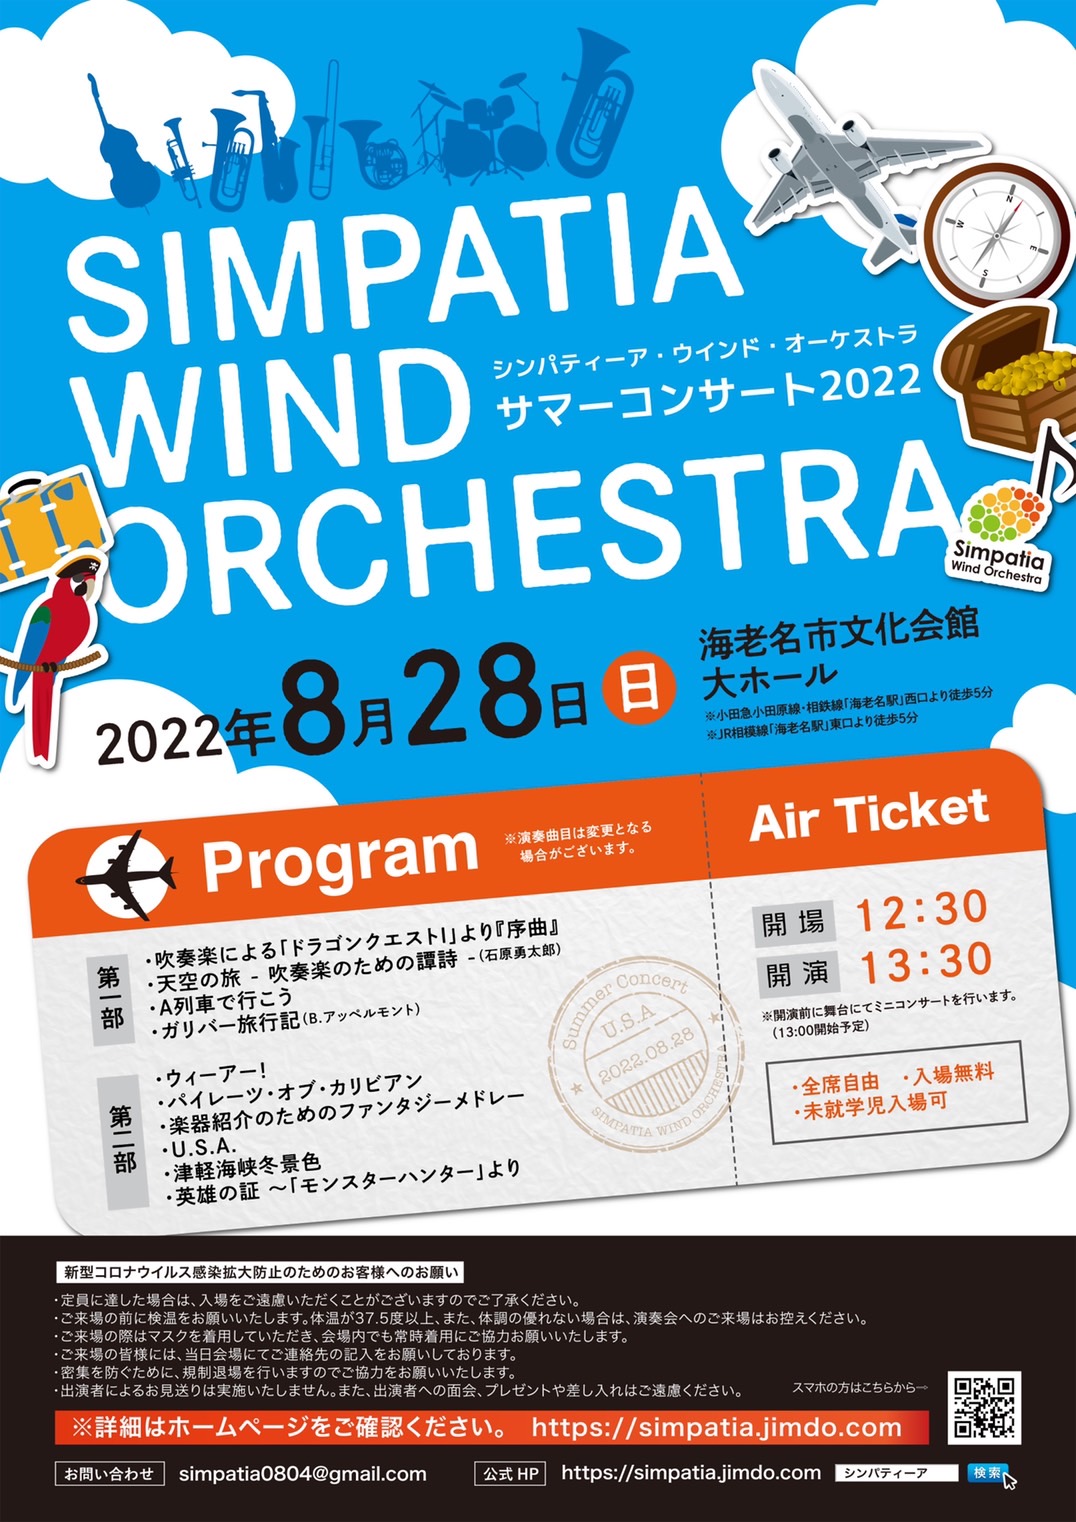 シンパティーア・ウインド・オーケストラシンパティーア・ウインド・オーケストラ サマーコンサート2022のフライヤー画像